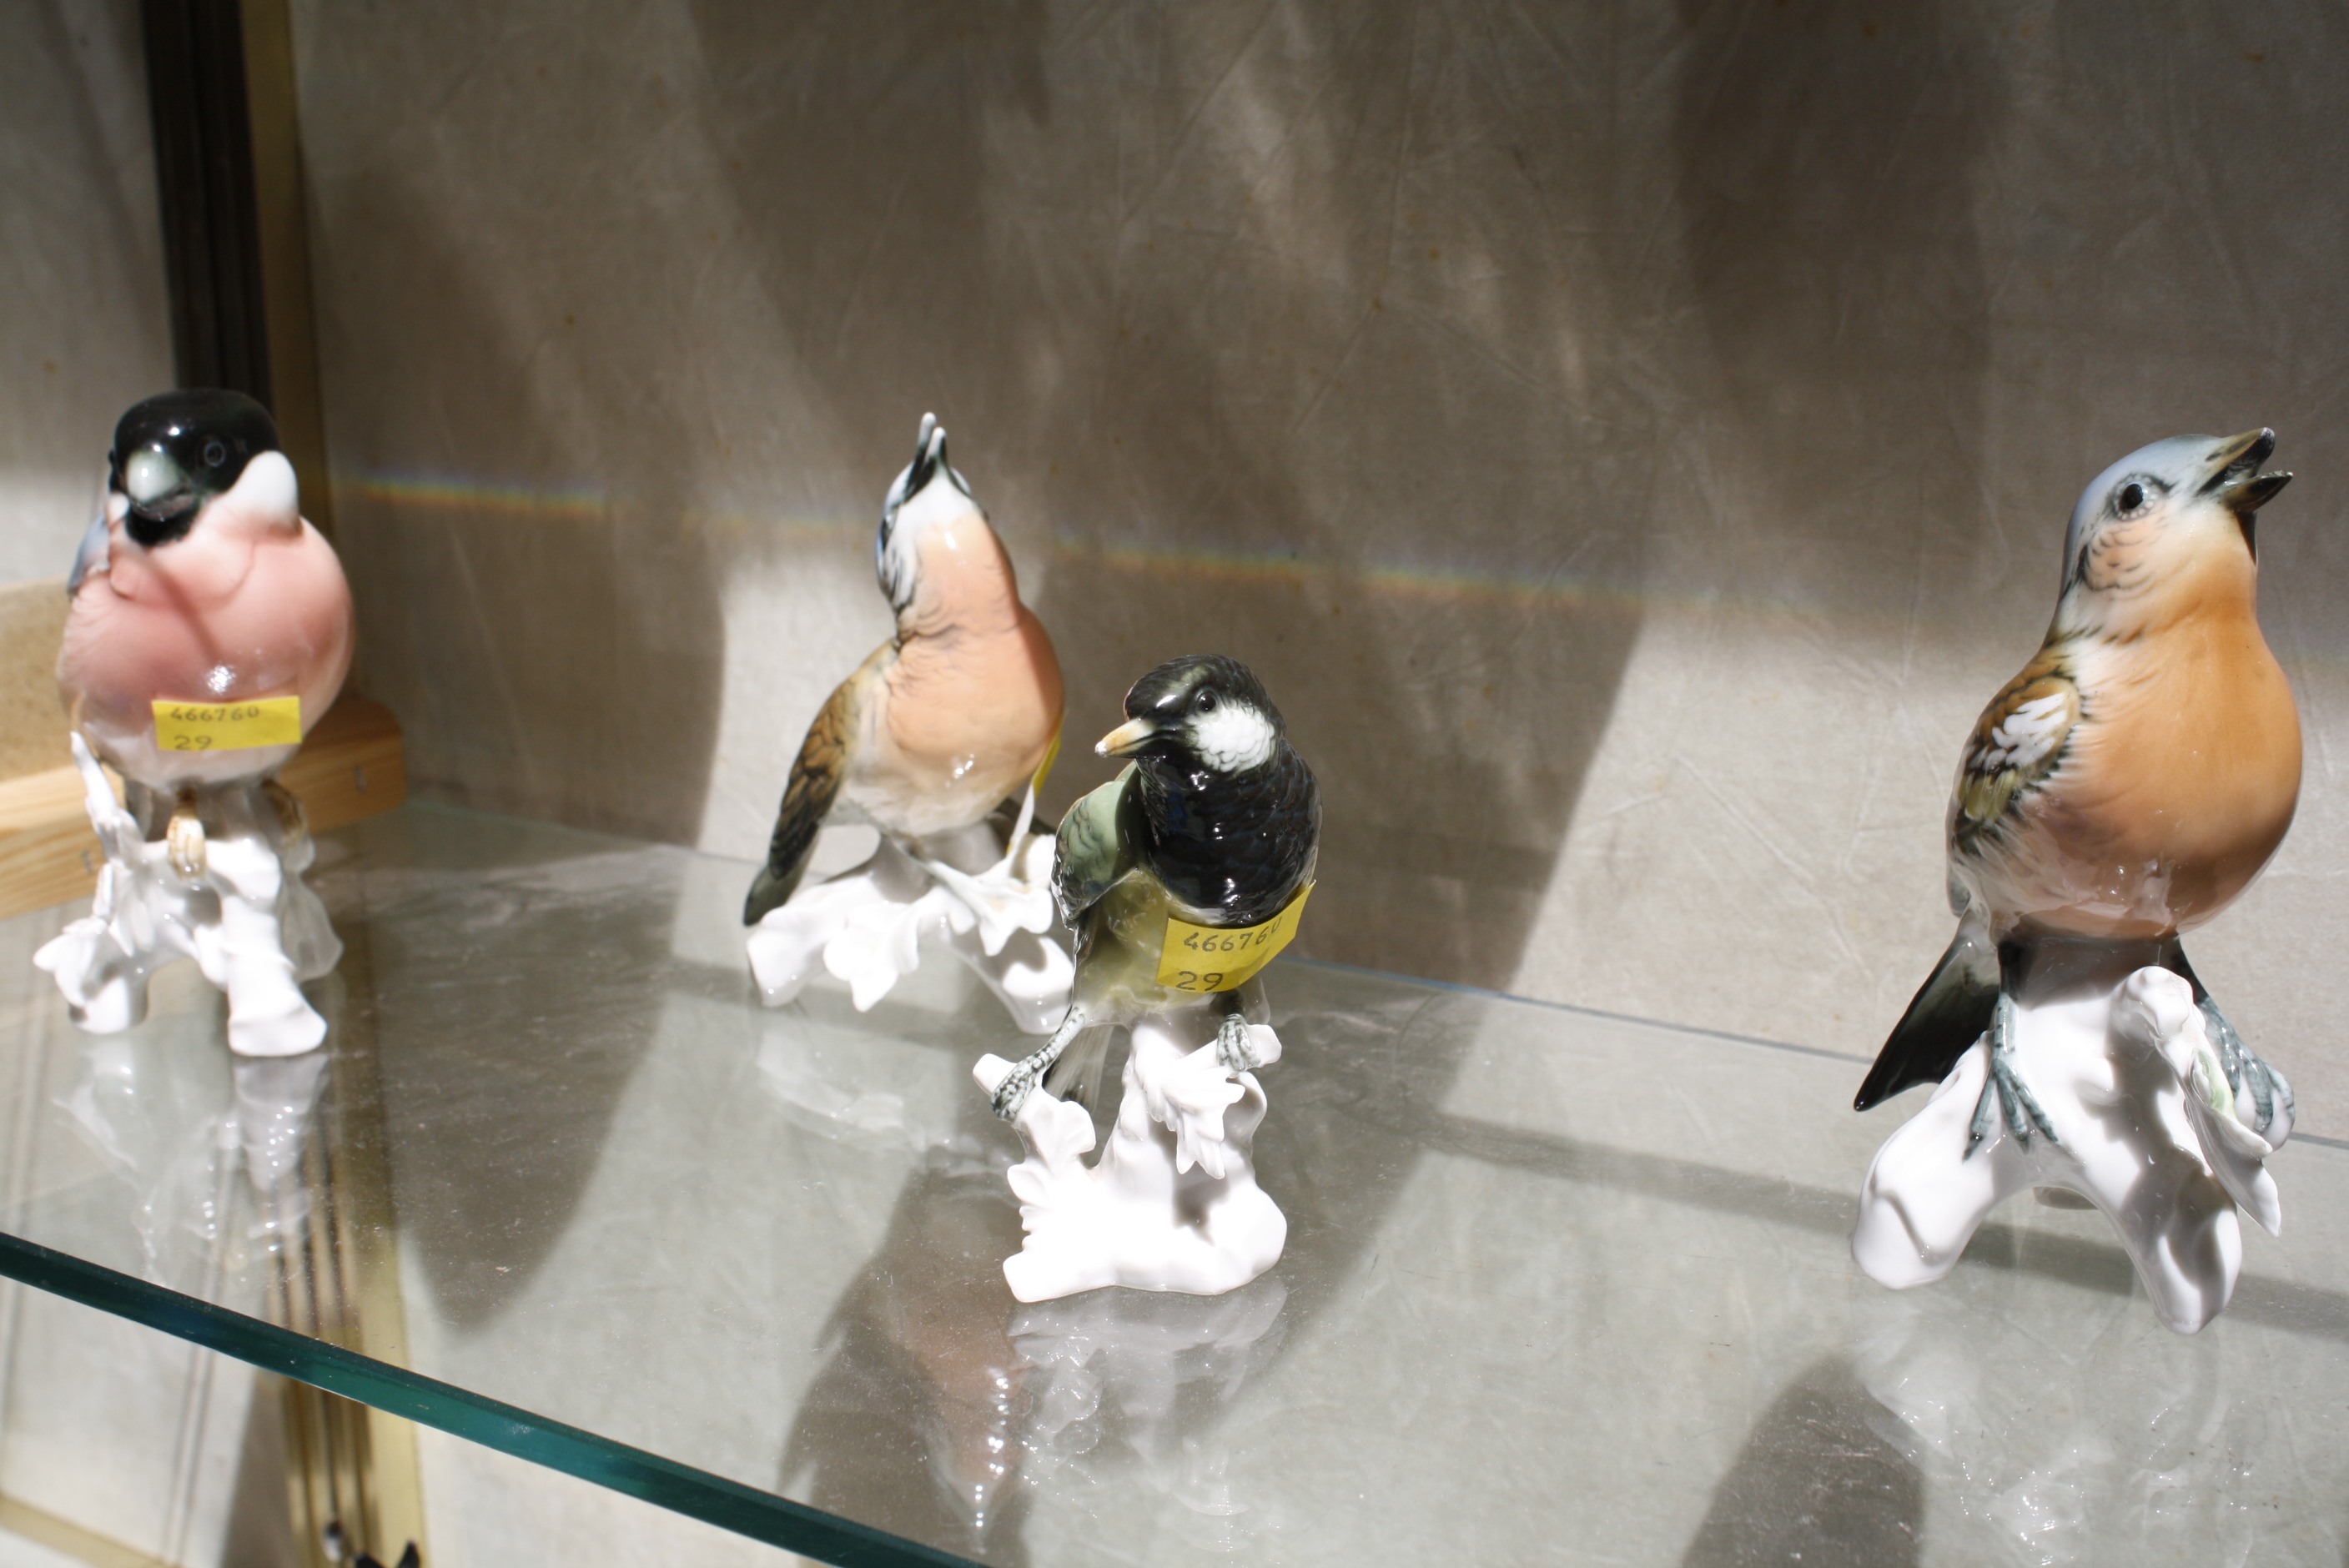 Seven German porcelain birds by Karl Ens (some damage) -7